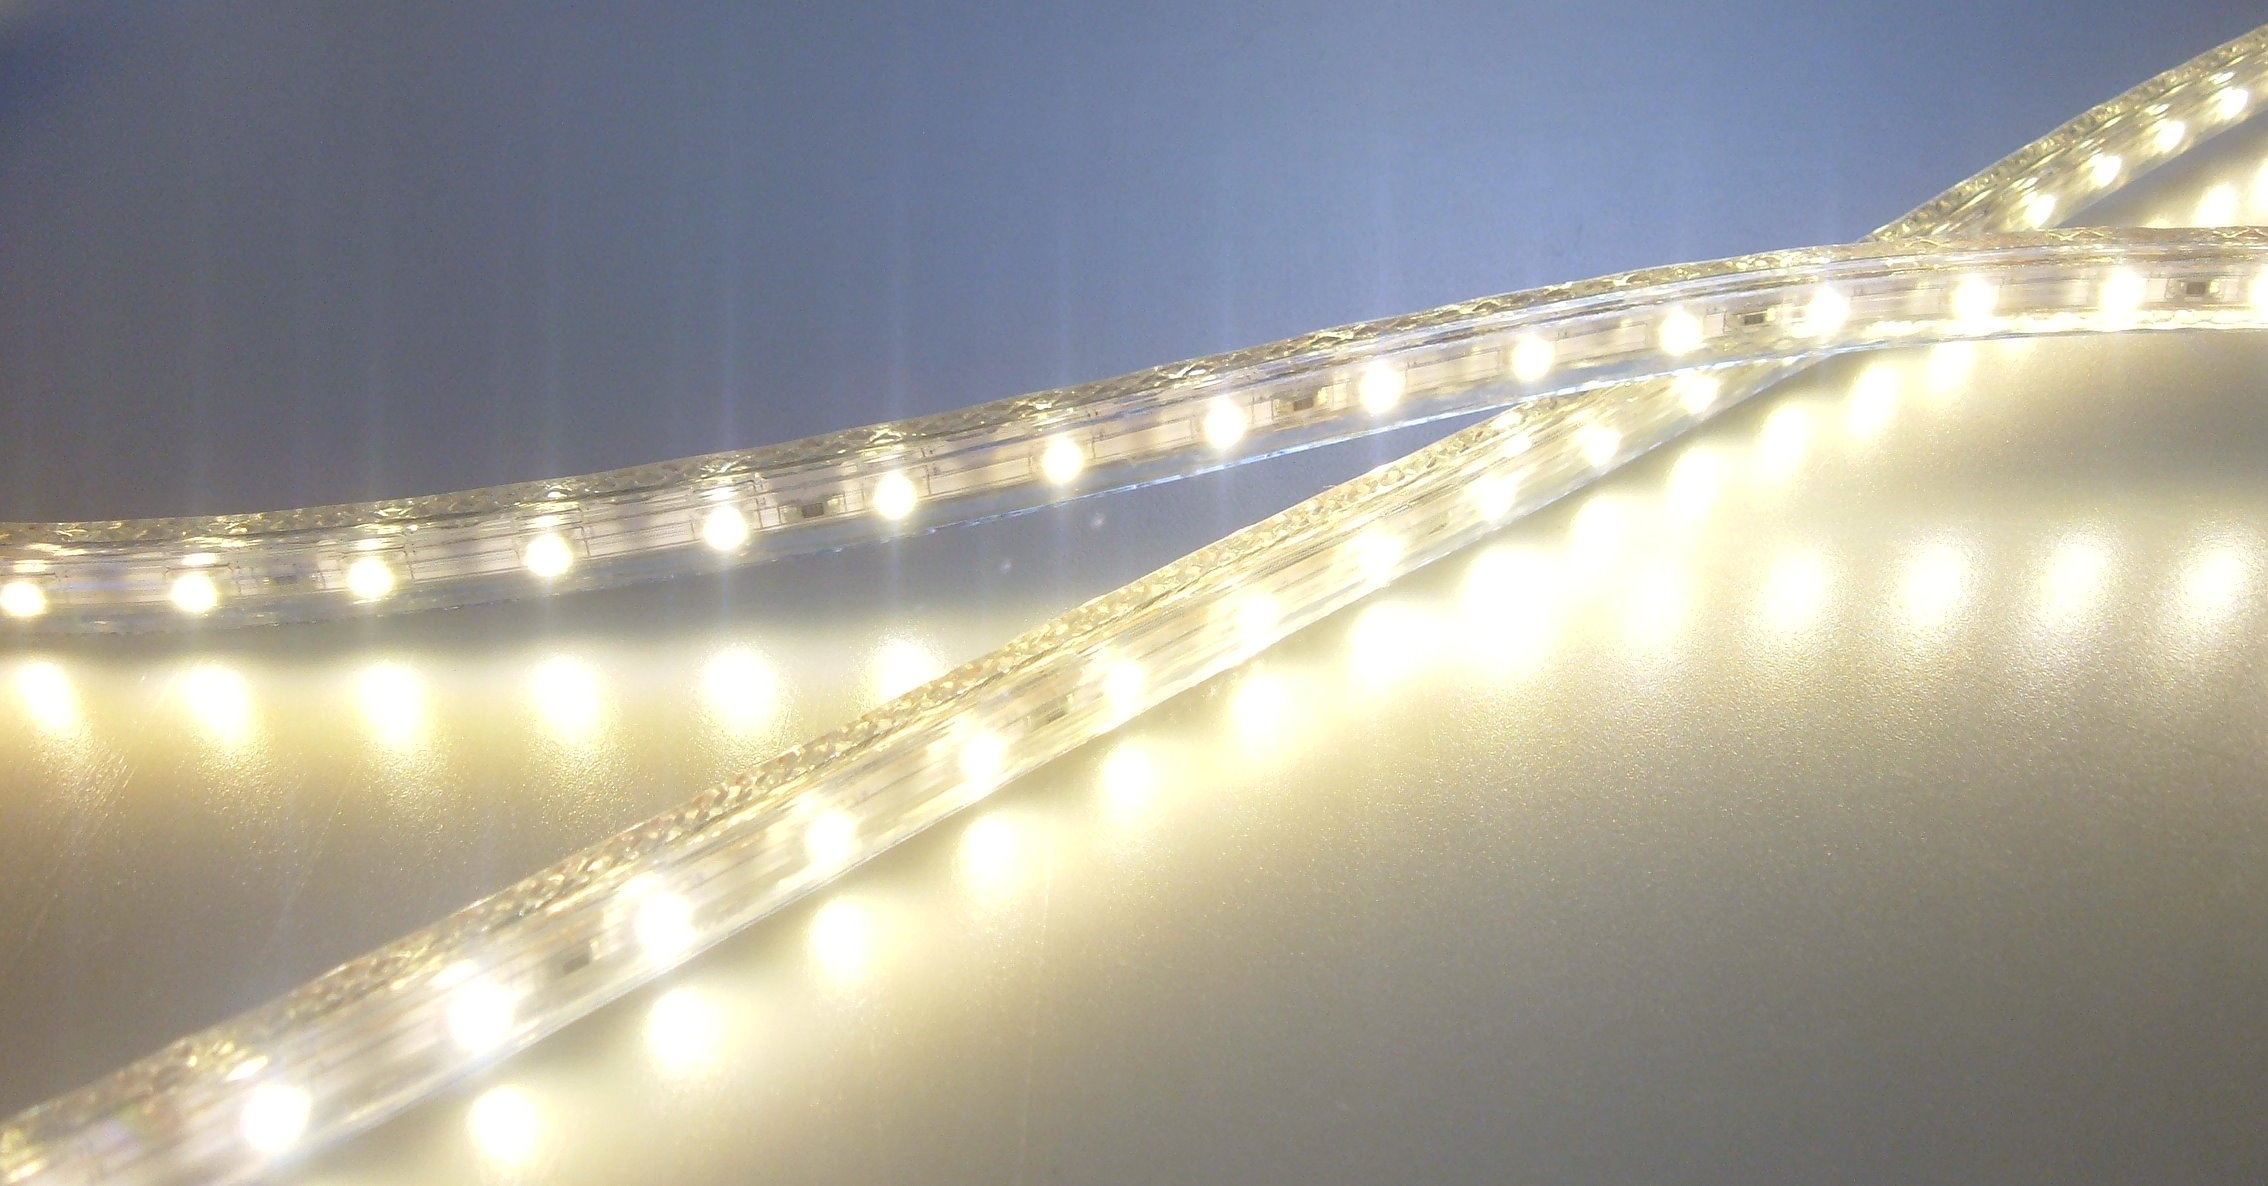 LICHT DISCOUNT 230V LED Lichtleiste 1m (30 SMD LEDs) - Decken Leiste  Wandlampe IP44 warmweiss inkl. Netzstecker : : Beleuchtung